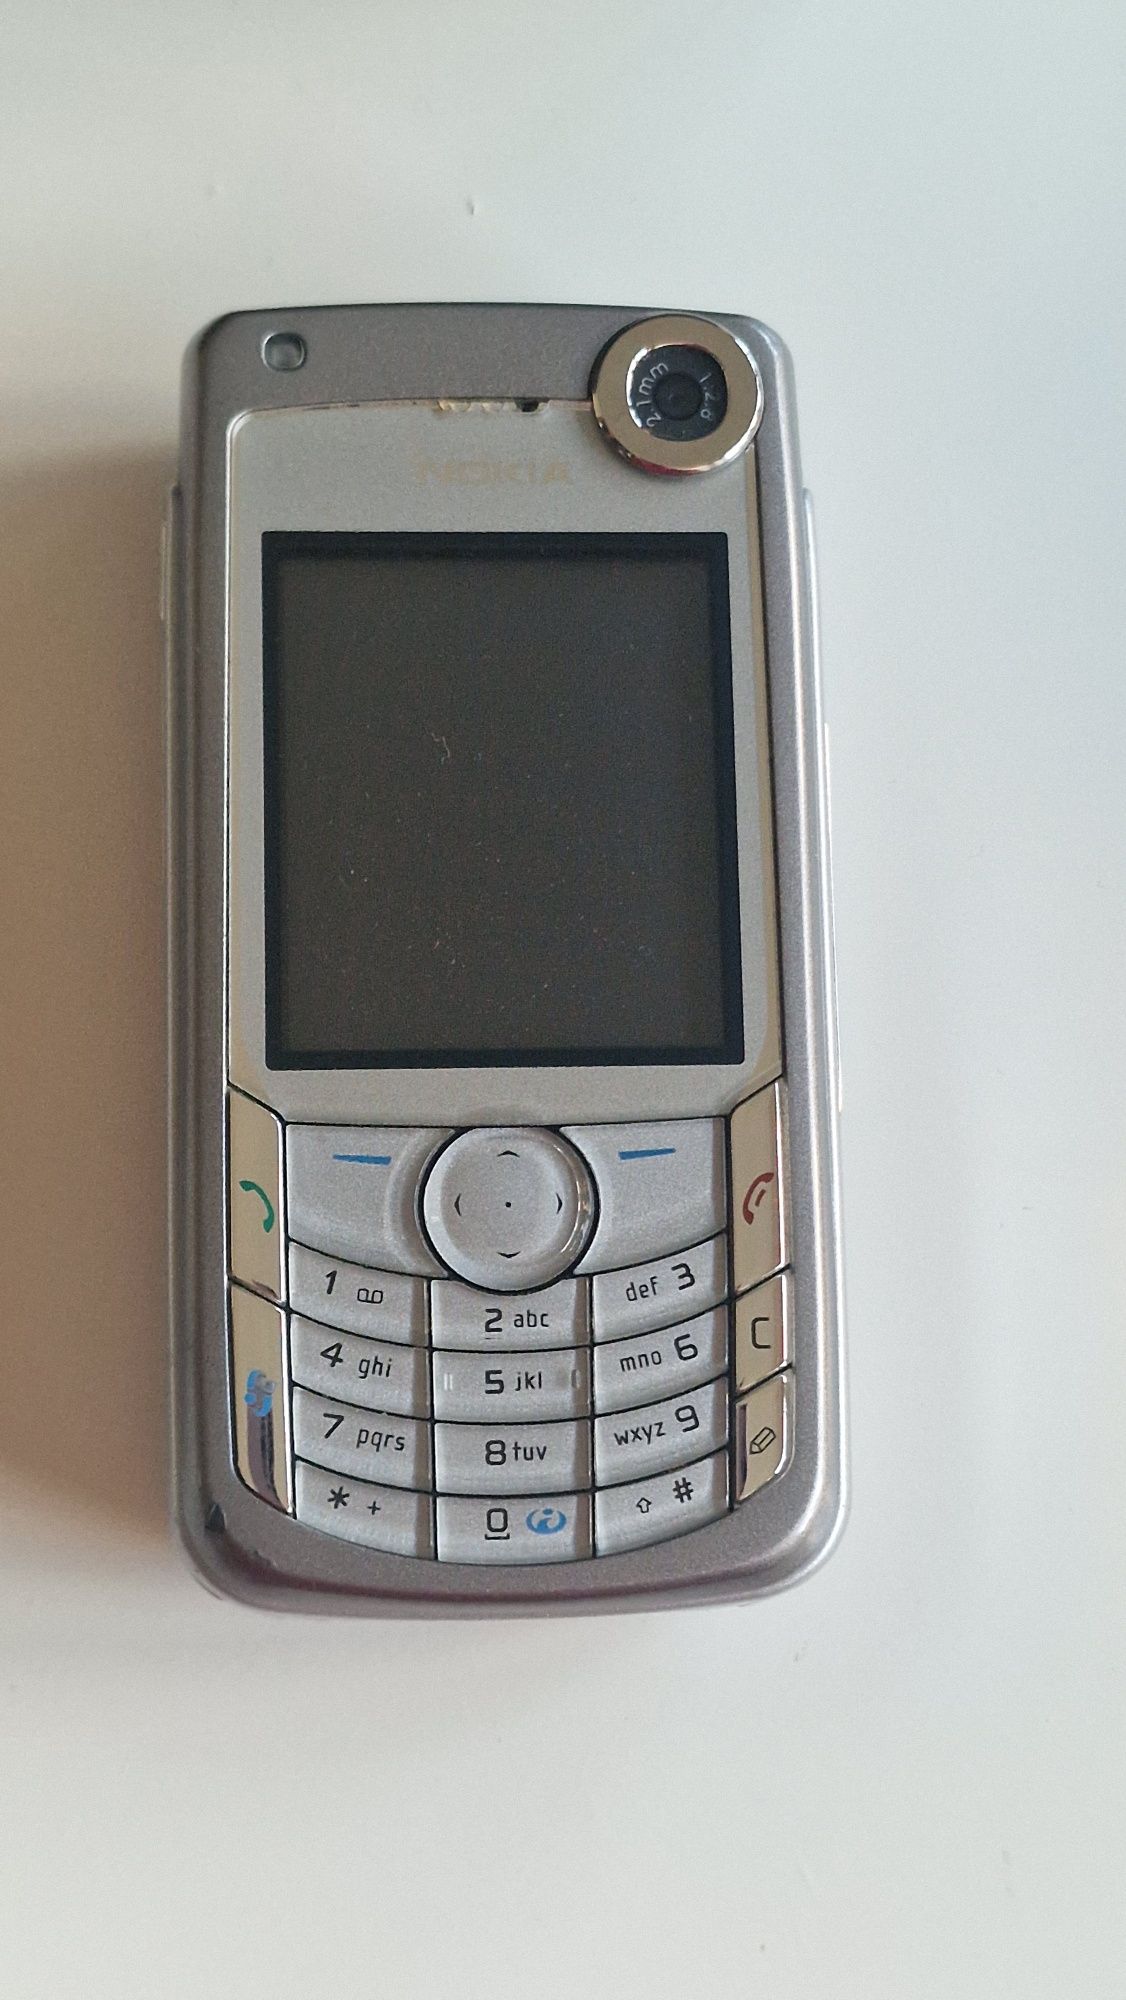 Nokia 6680 com caixa, carregador, phones e fio de ligação ao PC